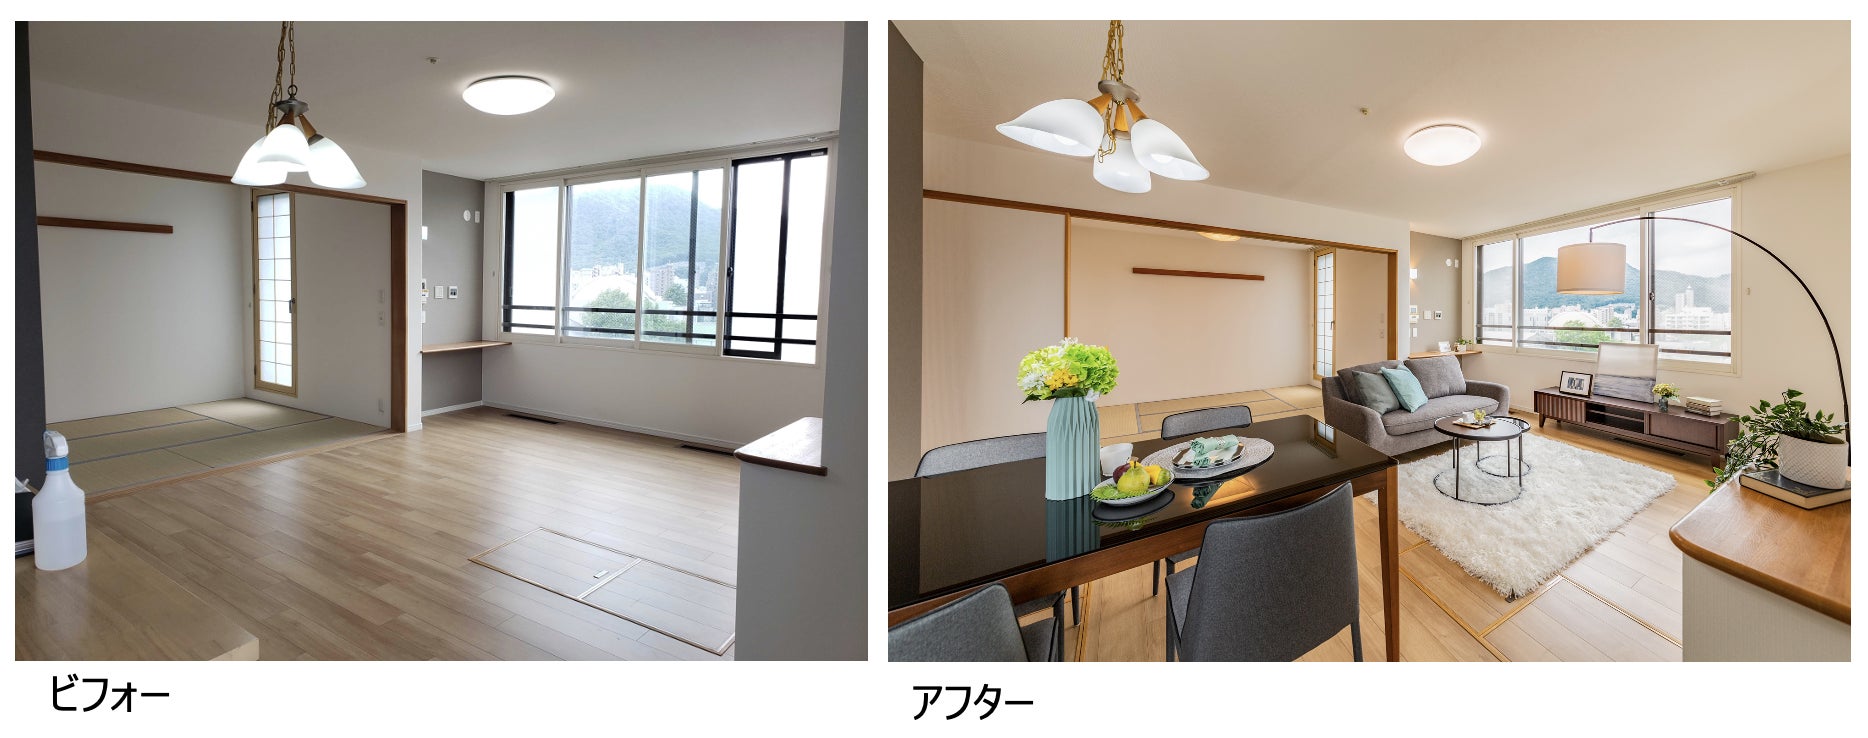 ホームステージングの効果を実例で競う日本唯一のイベント「第7回ホームステージングコンテスト」受賞者決定のサブ画像2